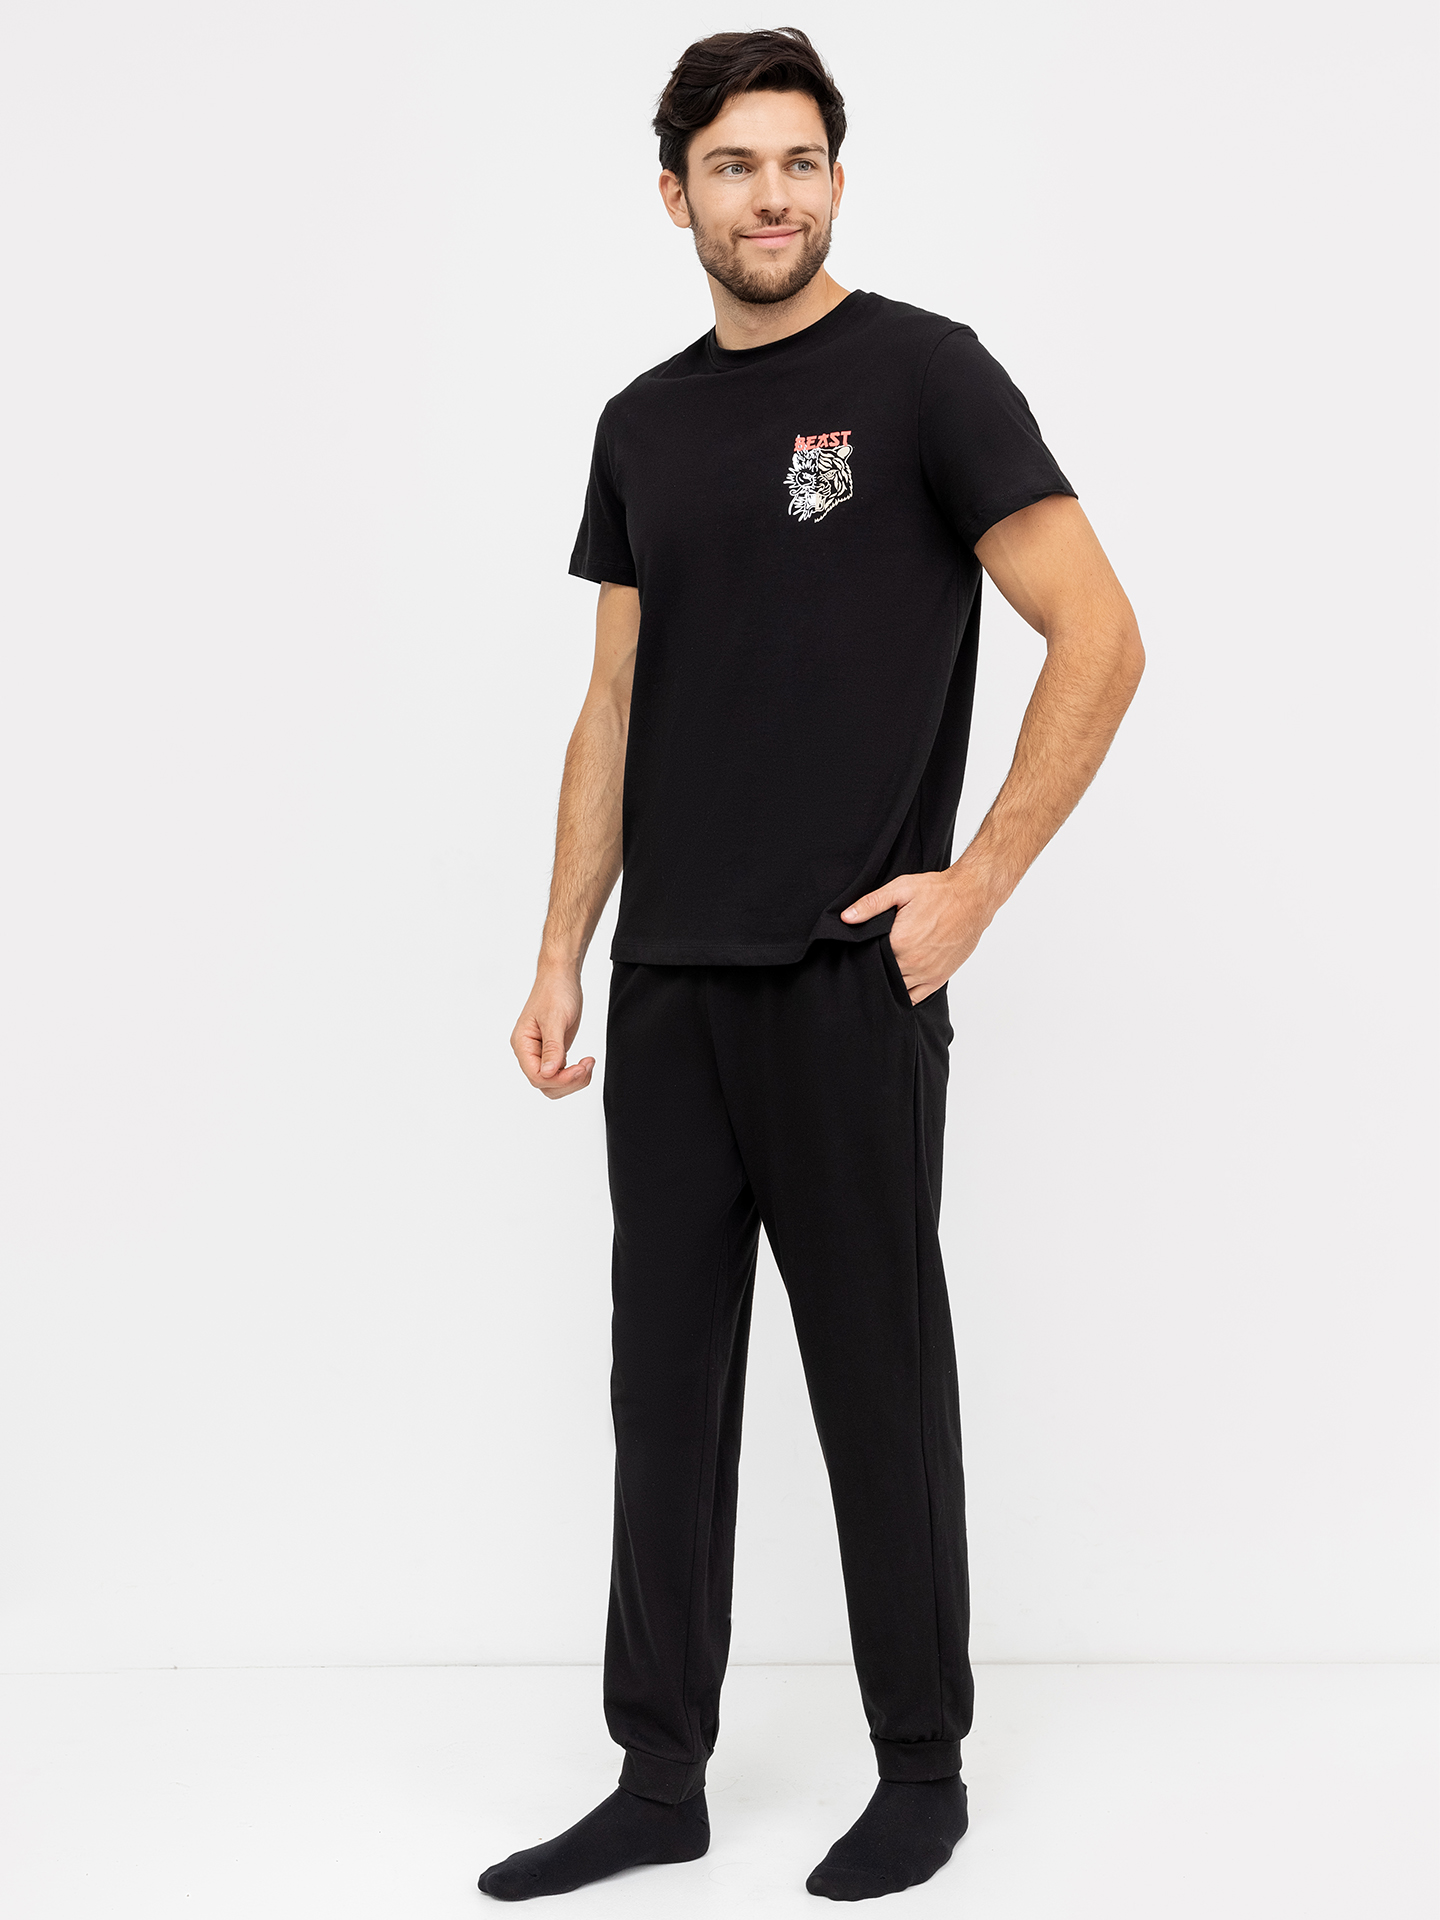 Хлопковый мужской комплект (футболка и брюки) черного цвета с крупными принтами